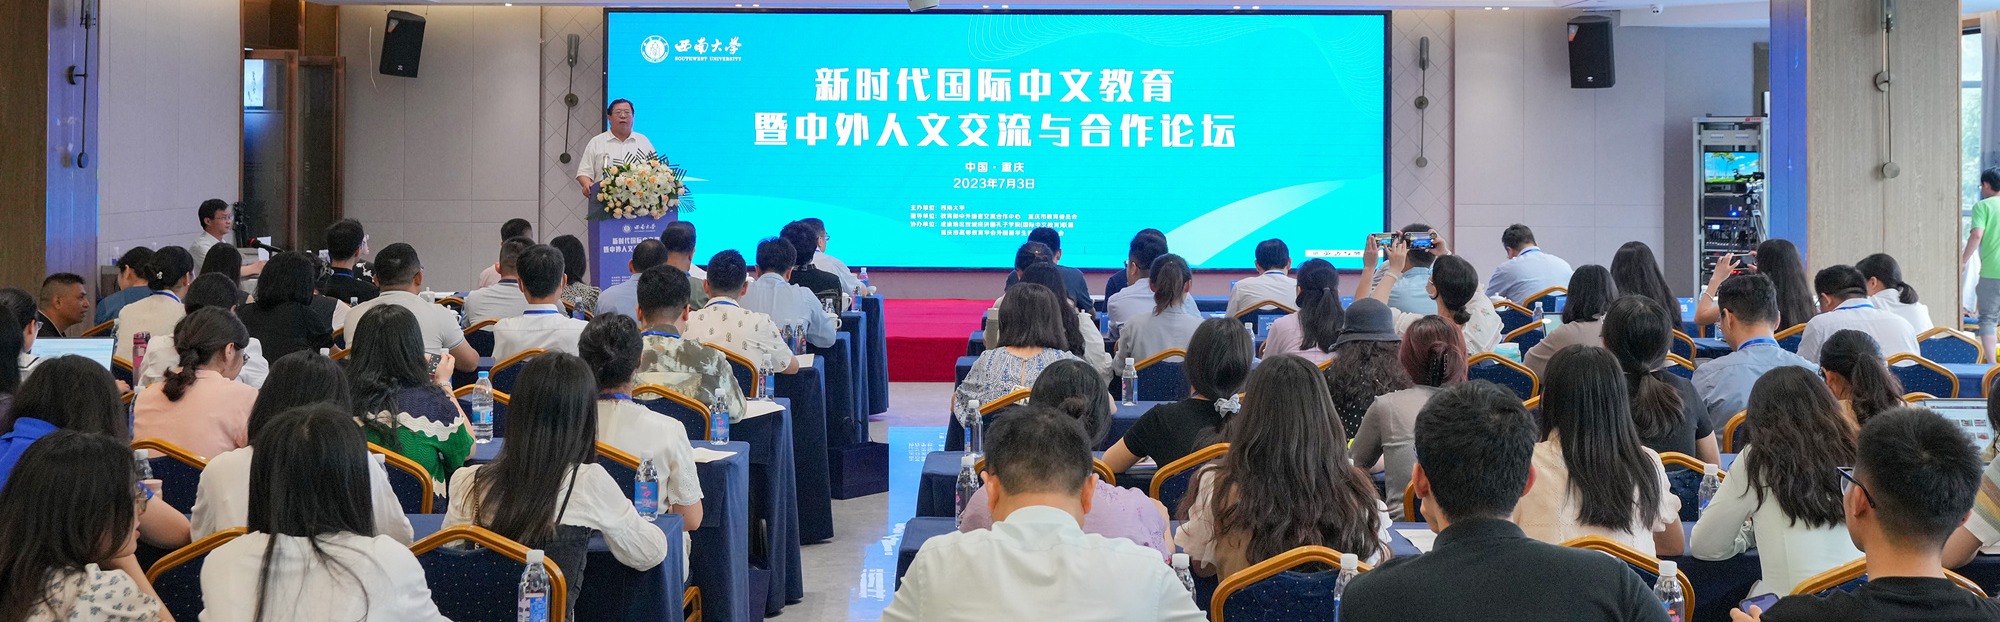 学校成功举办新时代国际中文教育暨中外人文交流与合作论坛